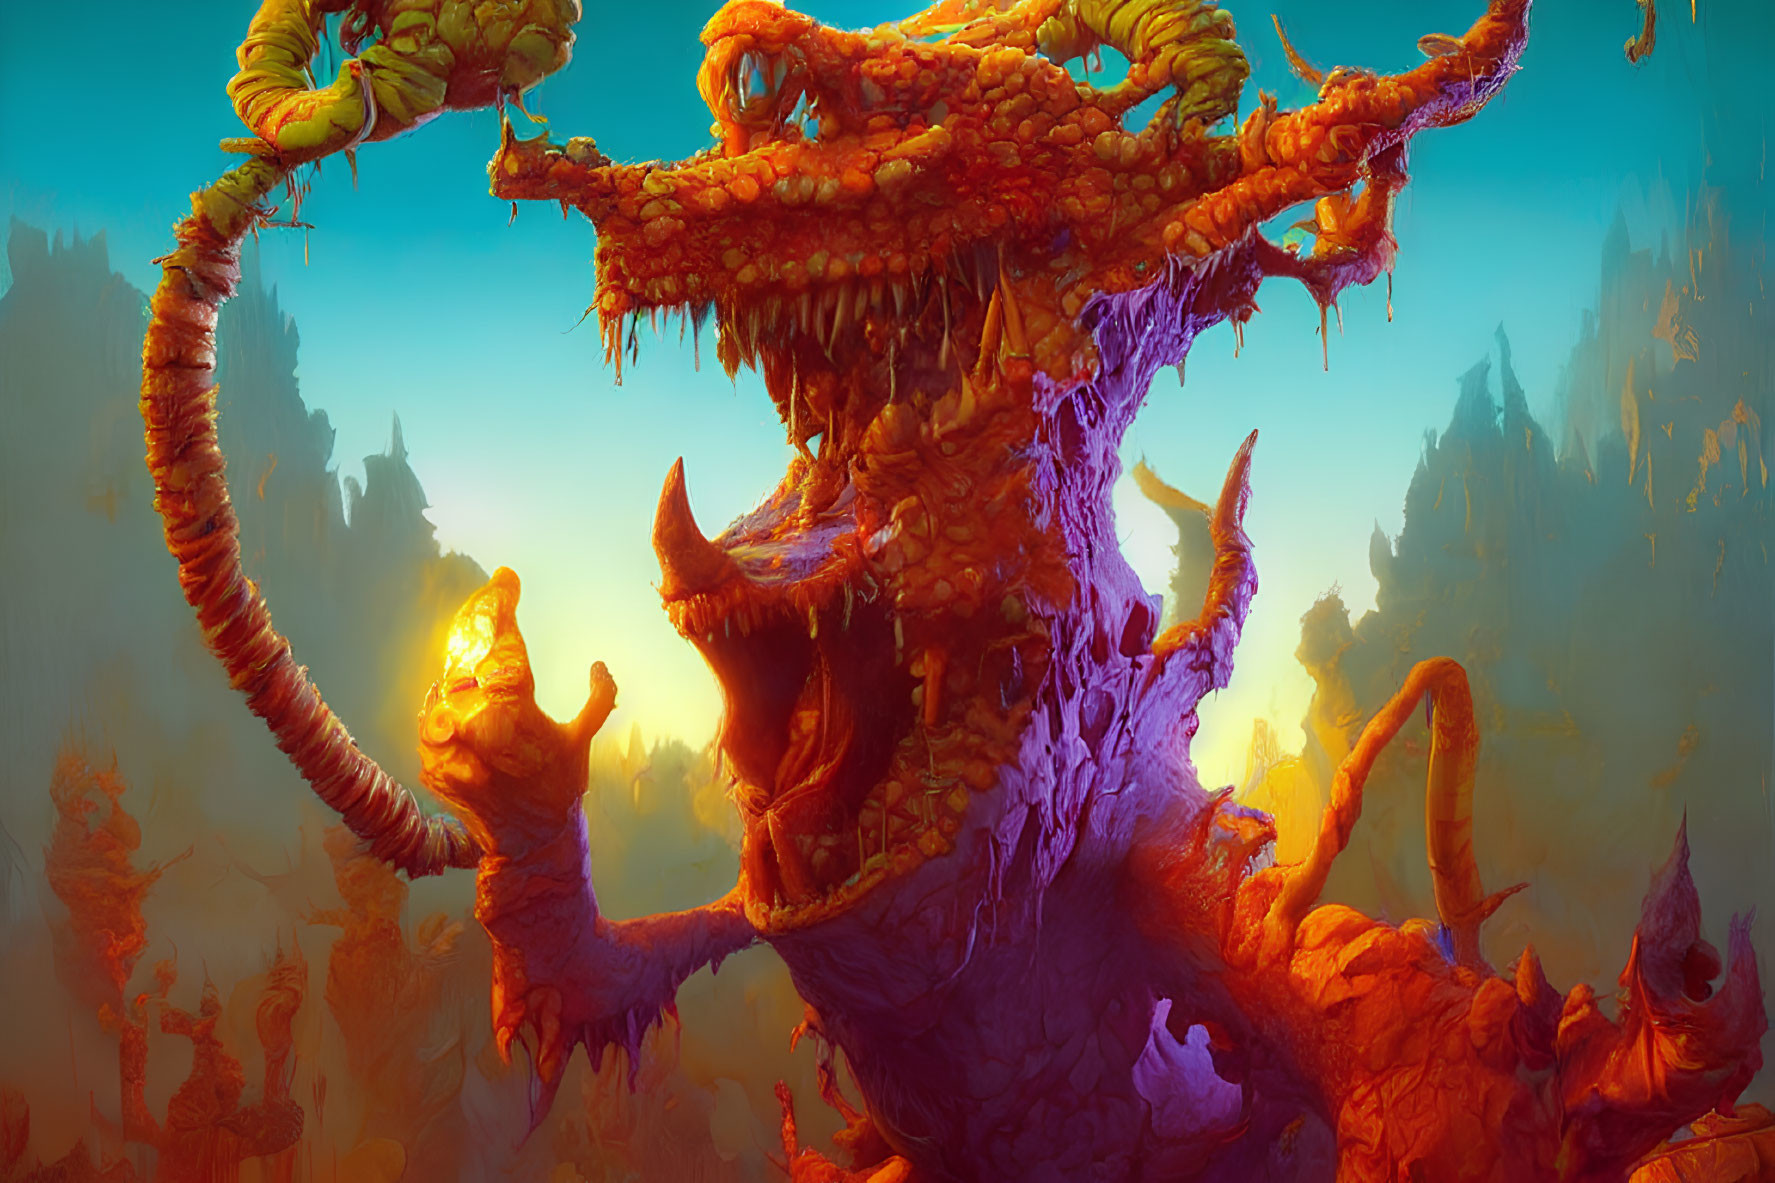 Fantasy Artwork: Vibrant Orange Dragon in Mythical Landscape